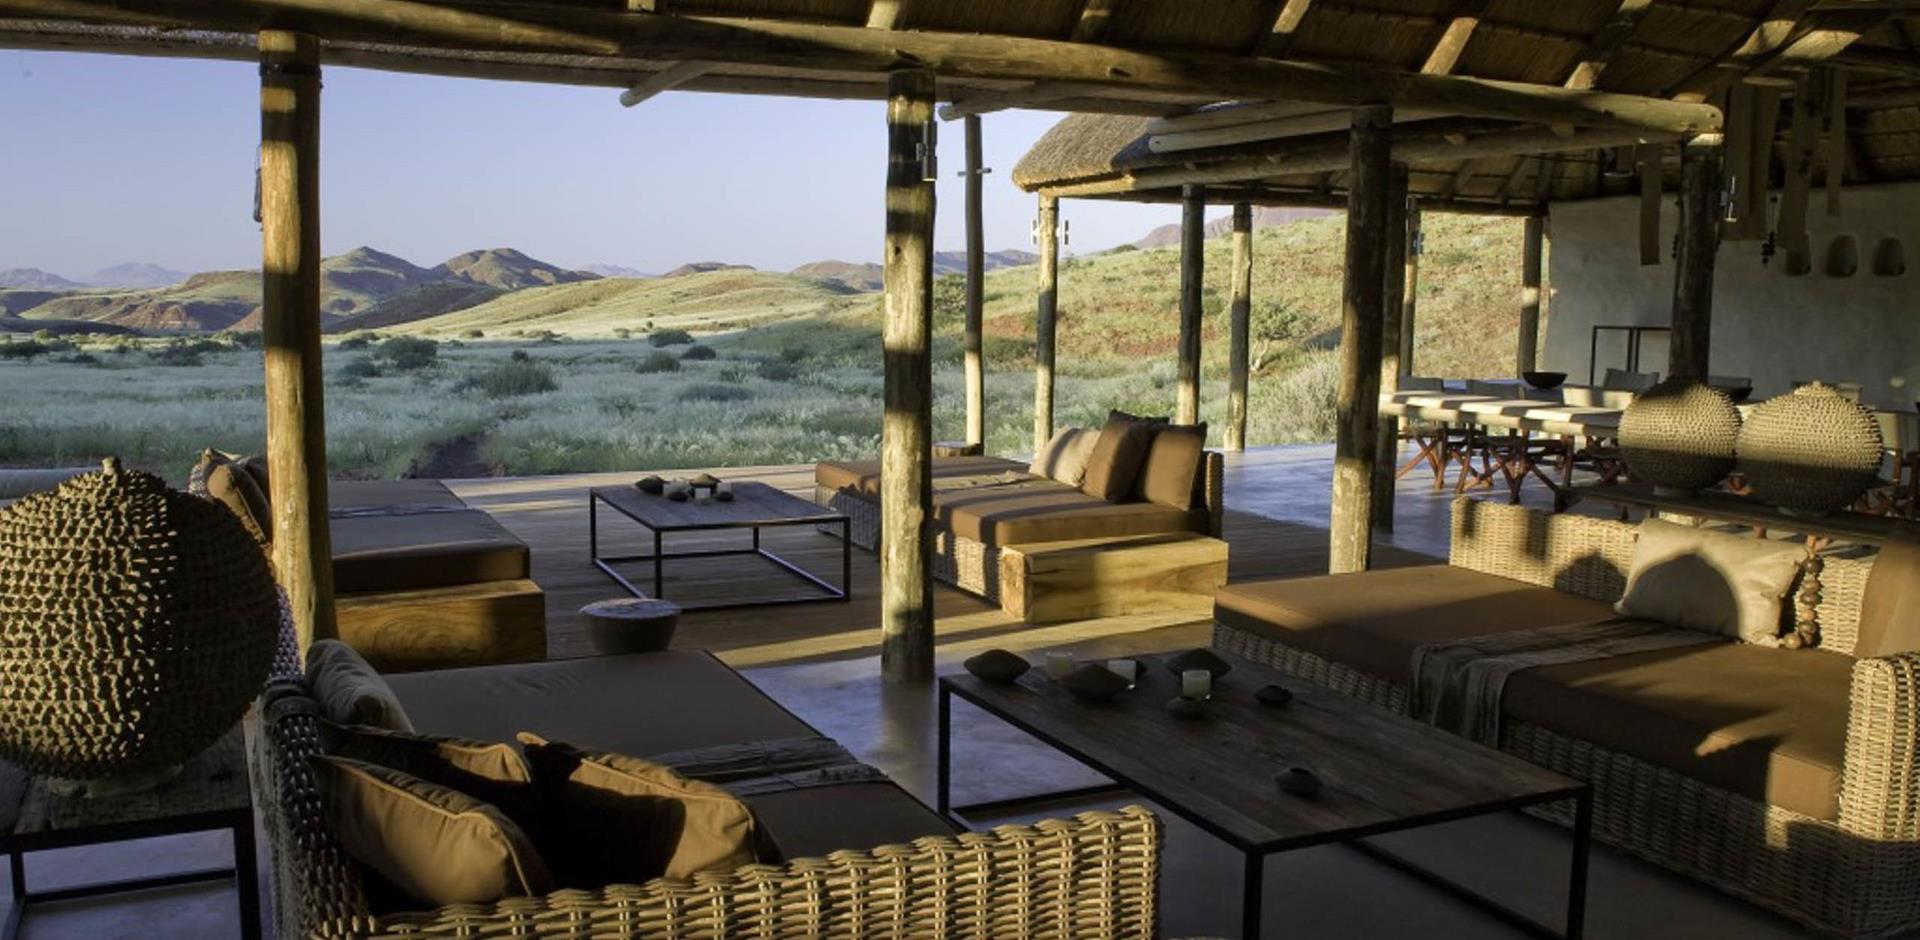 Lounge deck, Damaraland Camp, Namibia, A&K